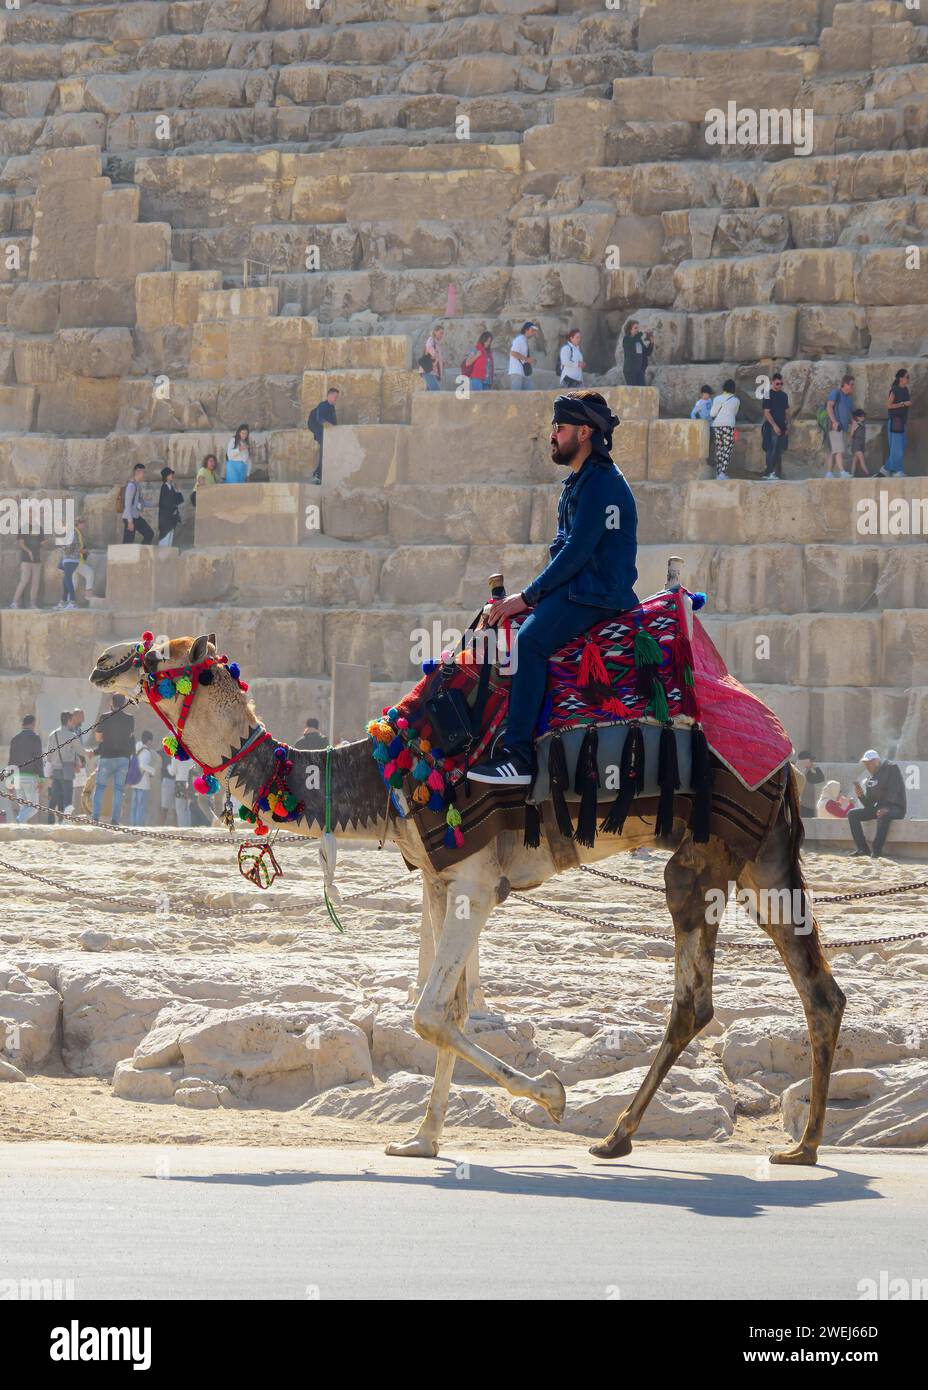 Touriste sur une promenade à dos de chameau devant la Grande Pyramide de Gizeh, la plus ancienne des sept merveilles du monde, le Caire, Egypte. Banque D'Images